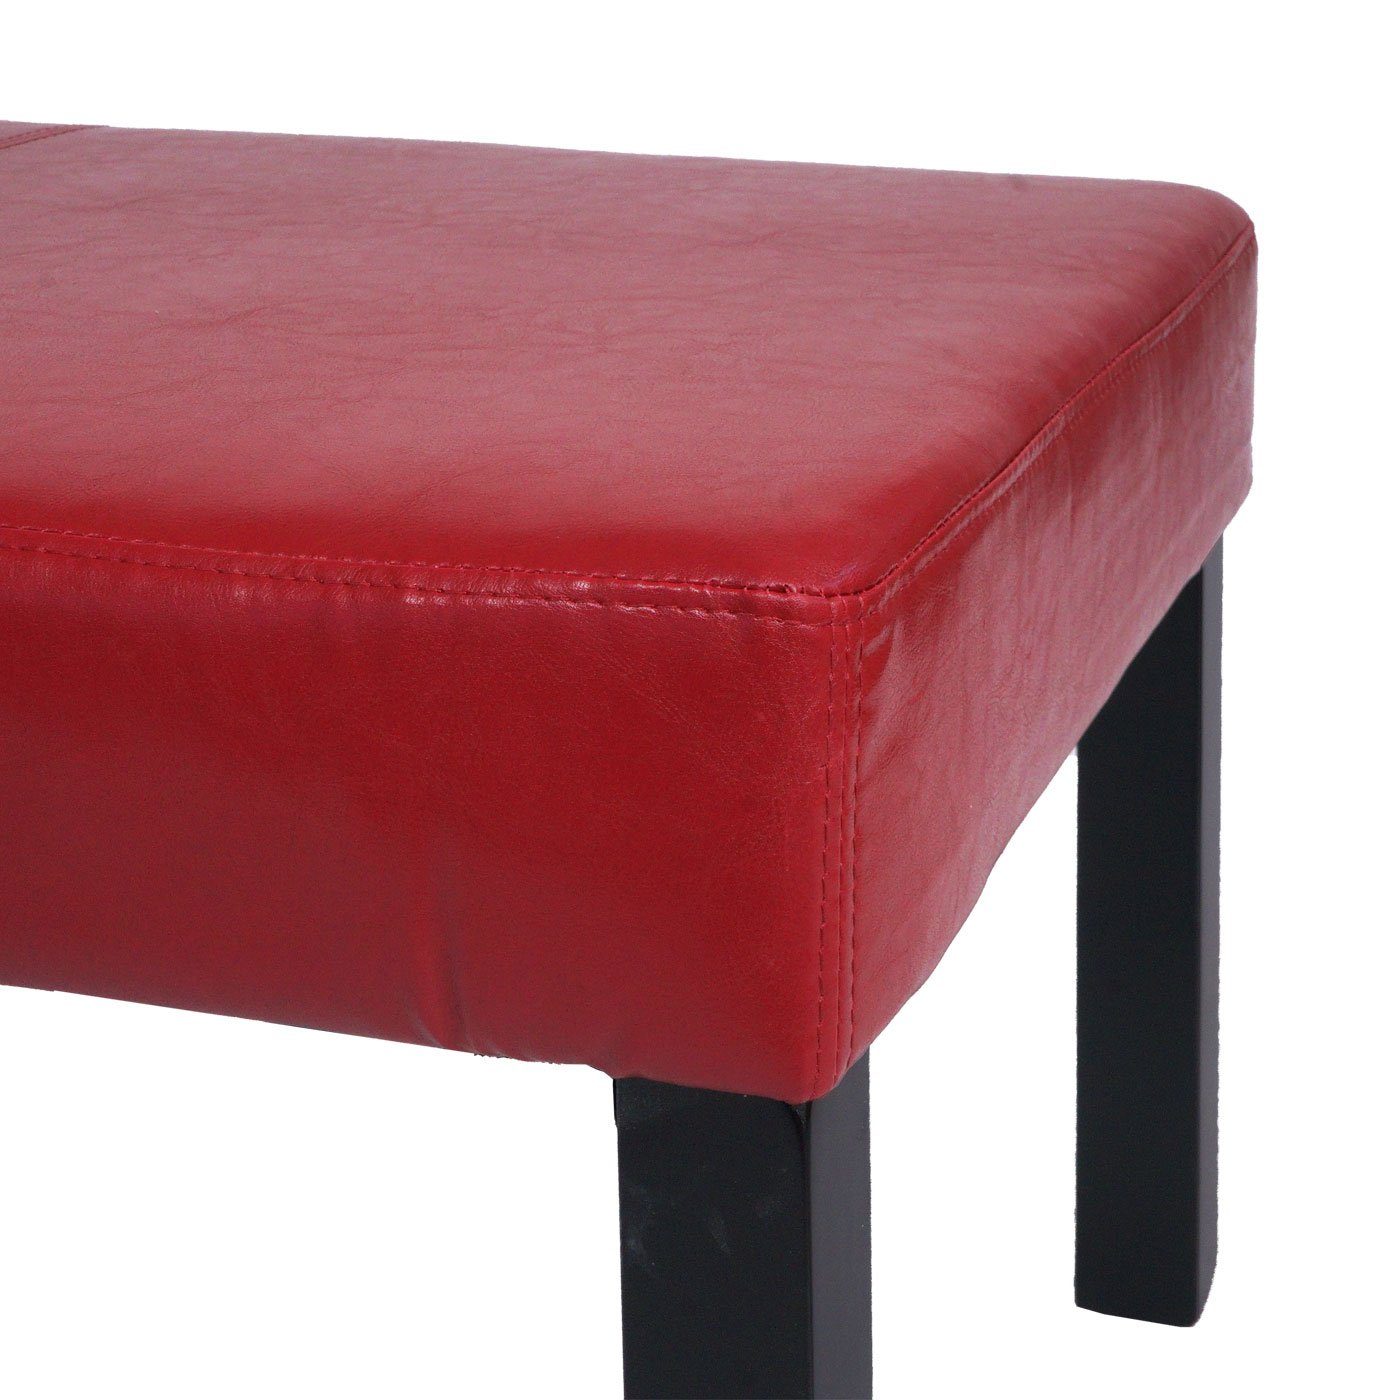 Gepolsterte modernes M37S, Sitzbank rot Sitzfläche, schwarz | MCW Stabile Füße Design,